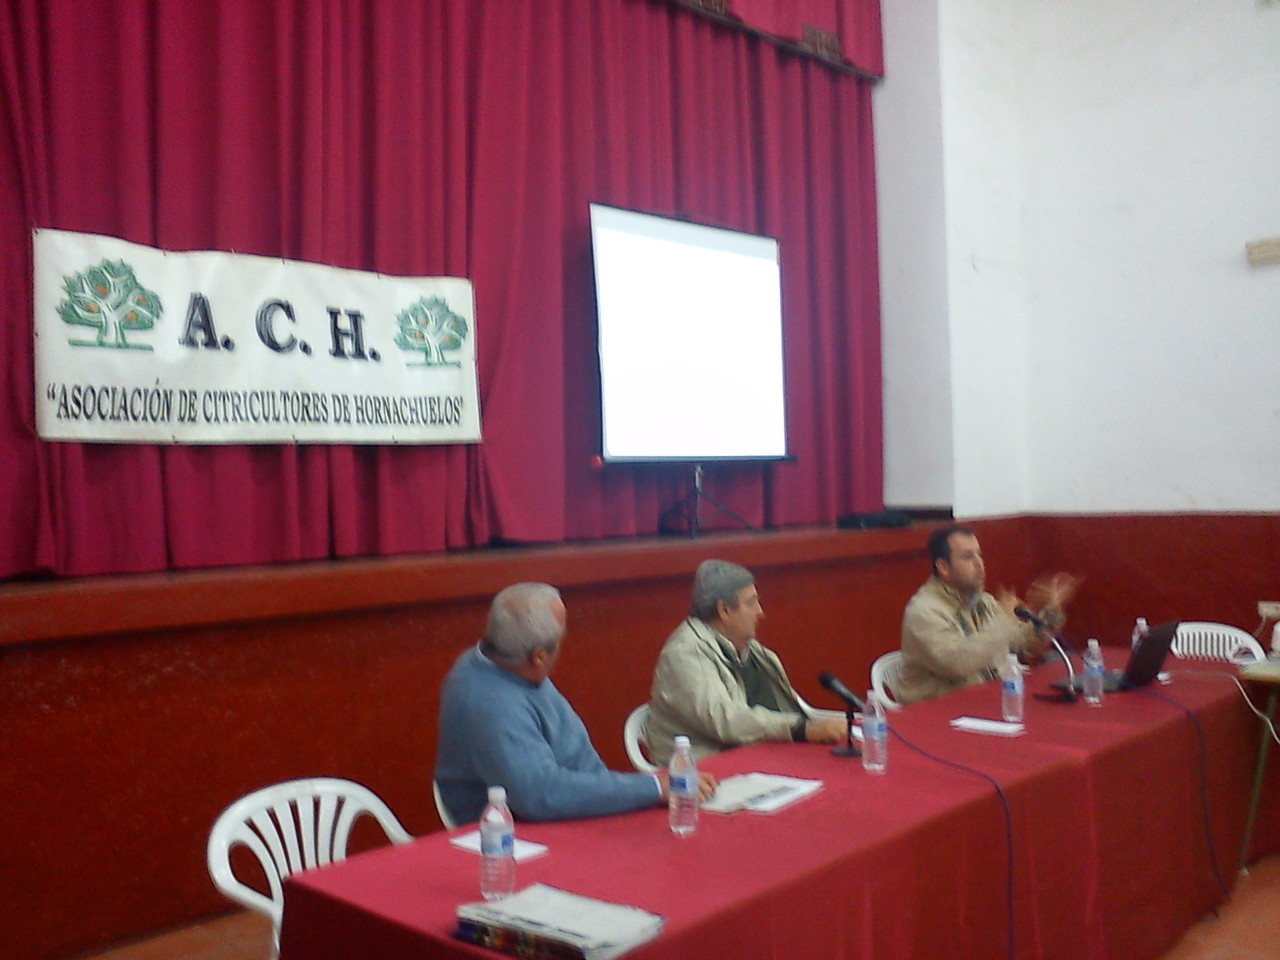 Reunión Informativa "A.C.H." (20-11-2012)